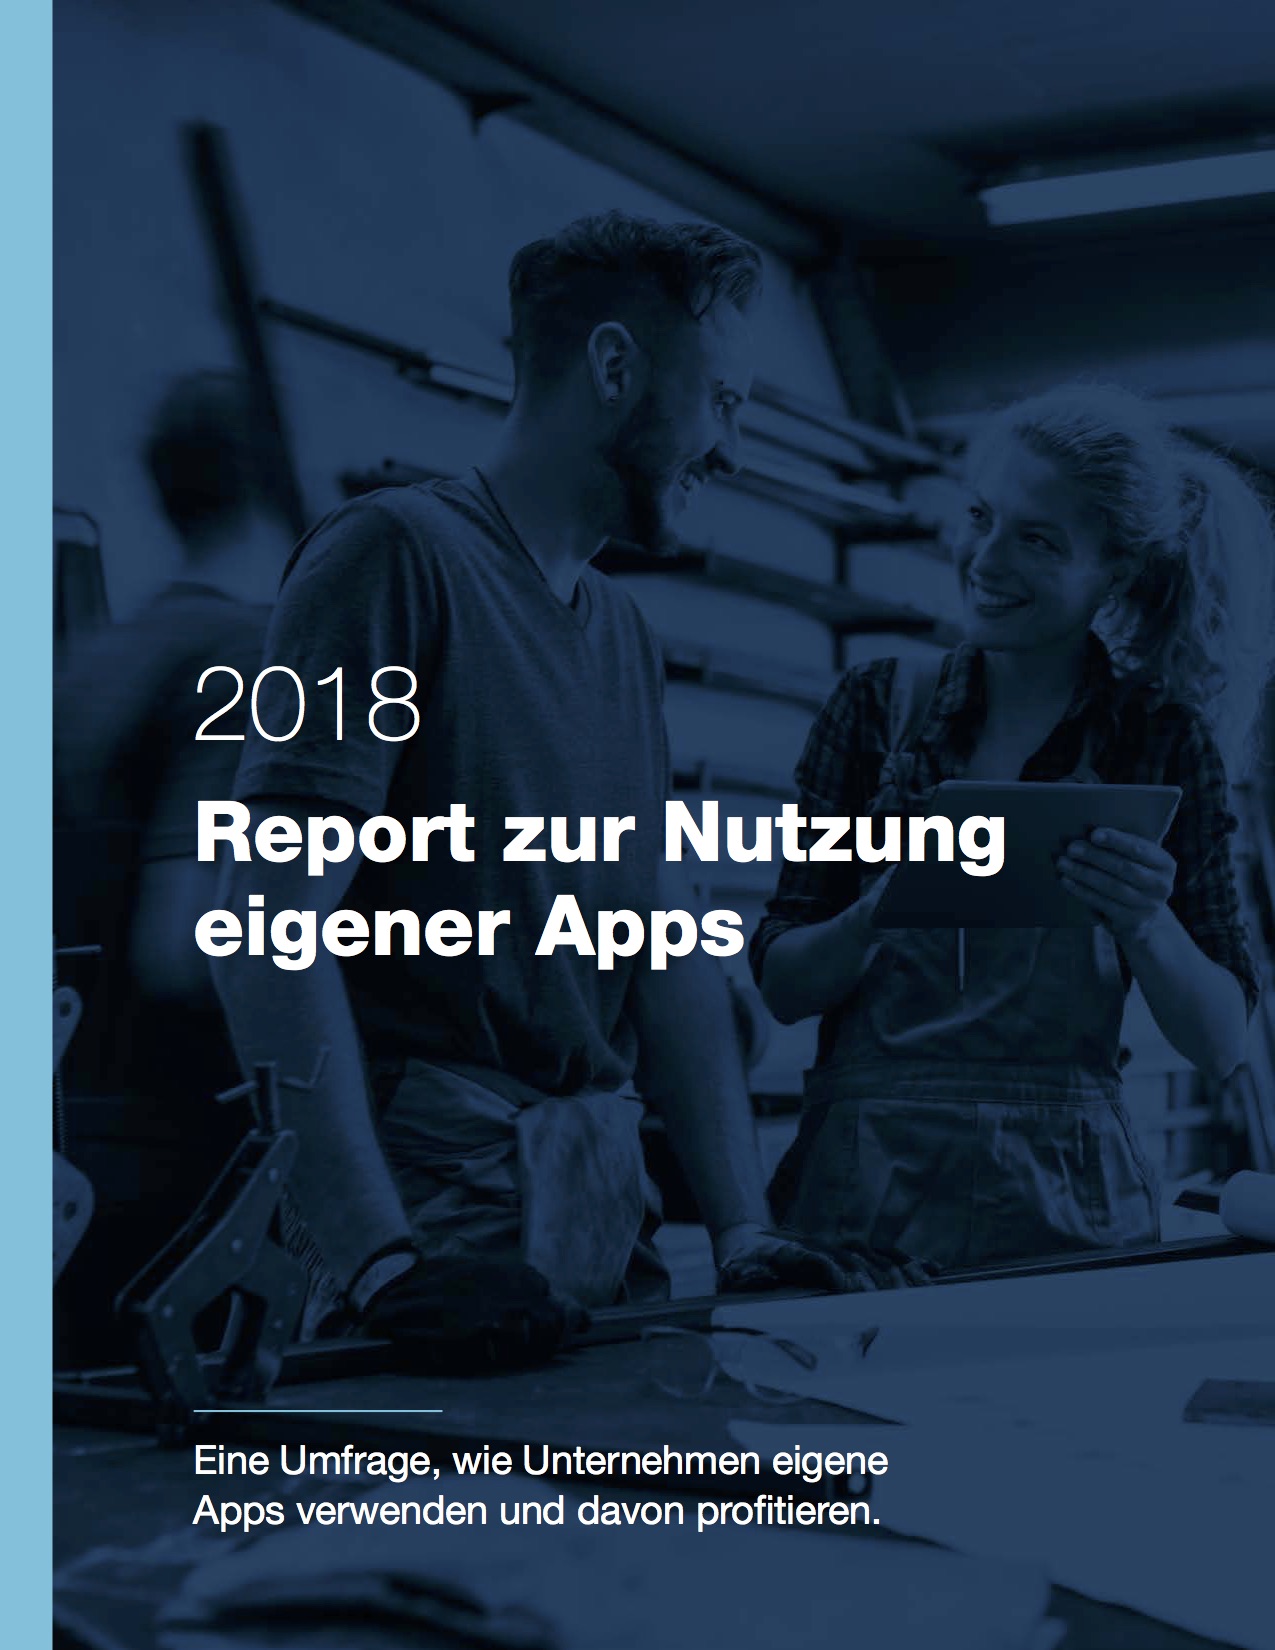 Report zur Nutzung eigener Apps 2018 – Deckblatt